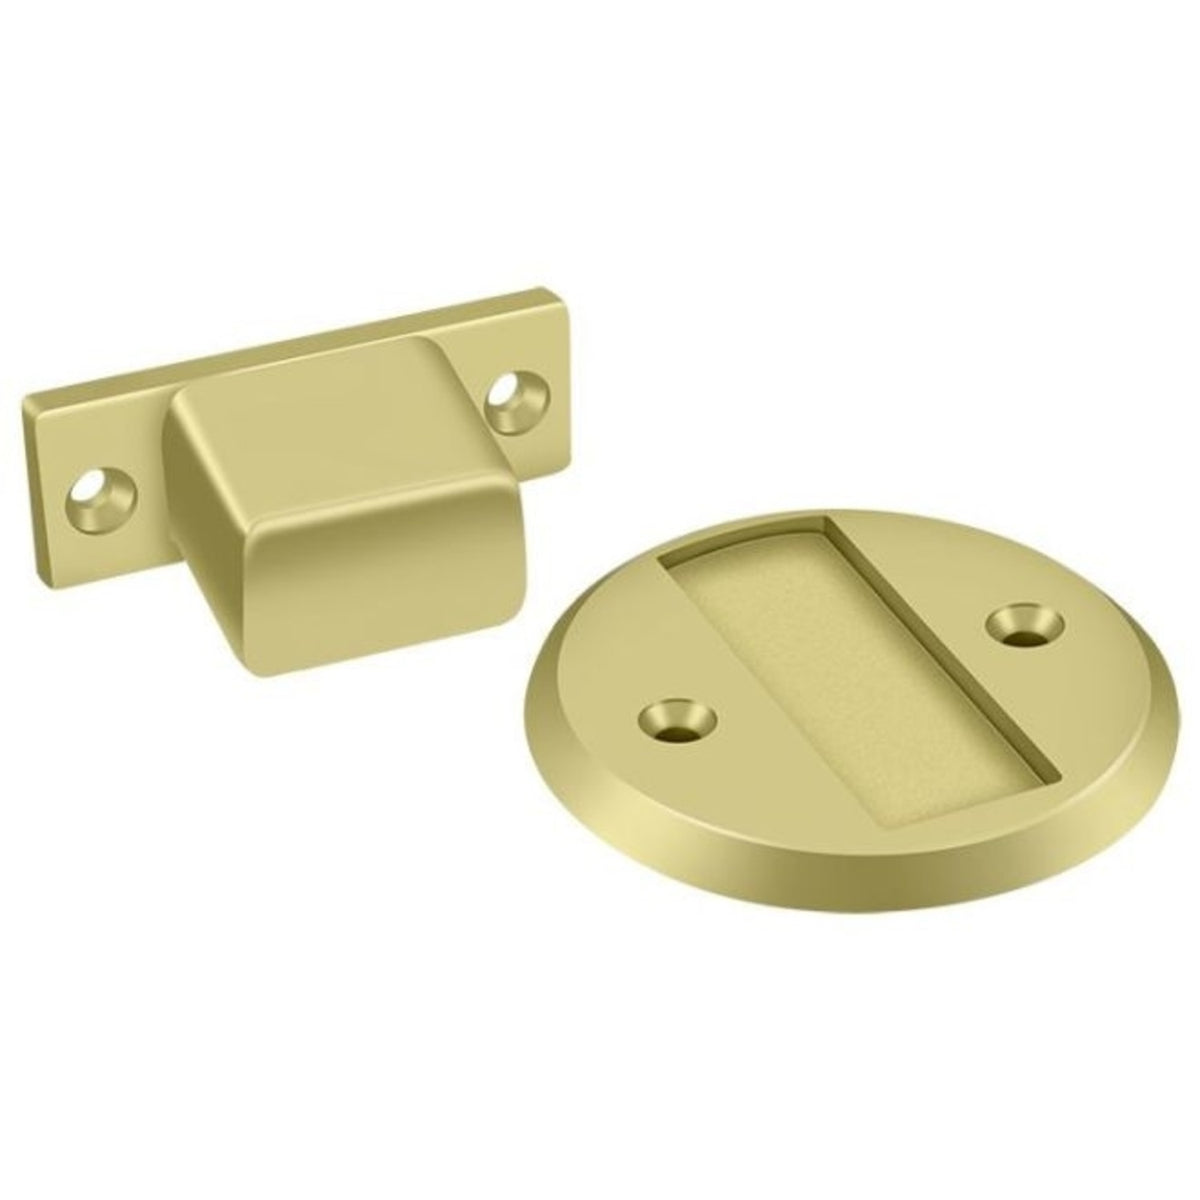 Deltana MDHF25U3 Magnetic Door Holder Flush, Bright Brass